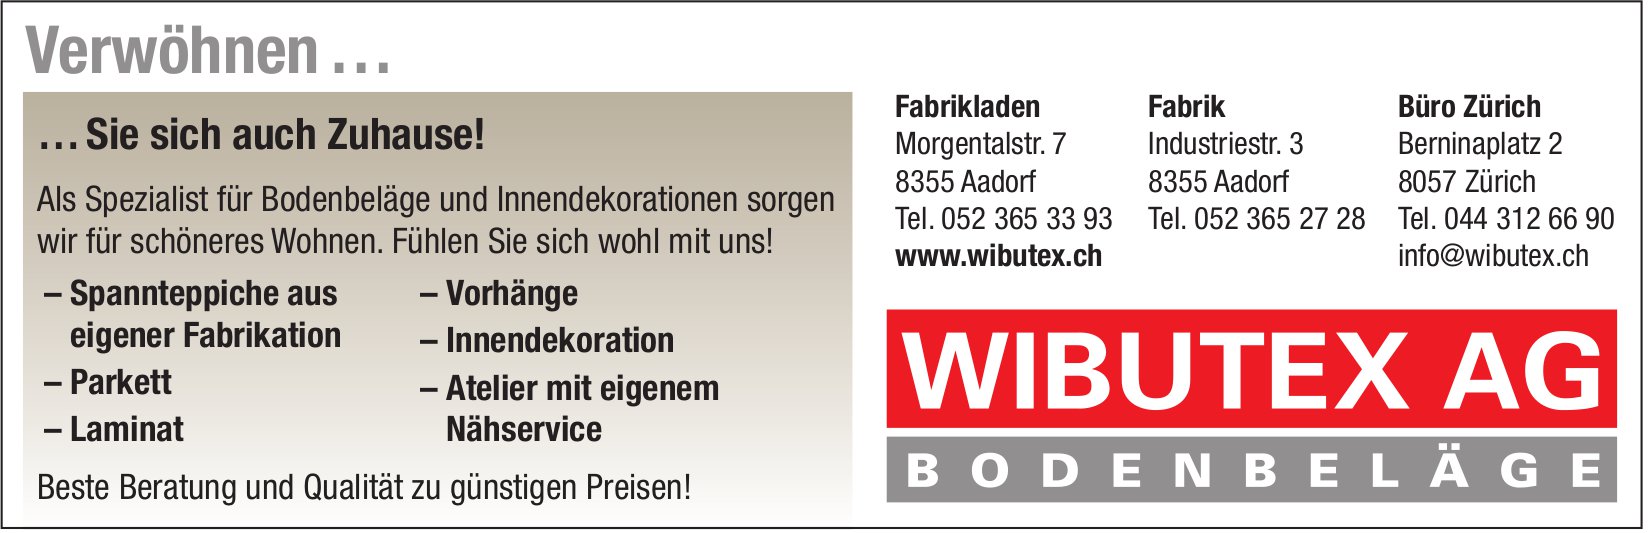 Wibutex AG Bodenbeläge, Aadorf - Verwöhnen … Sie sich auch Zuhause!